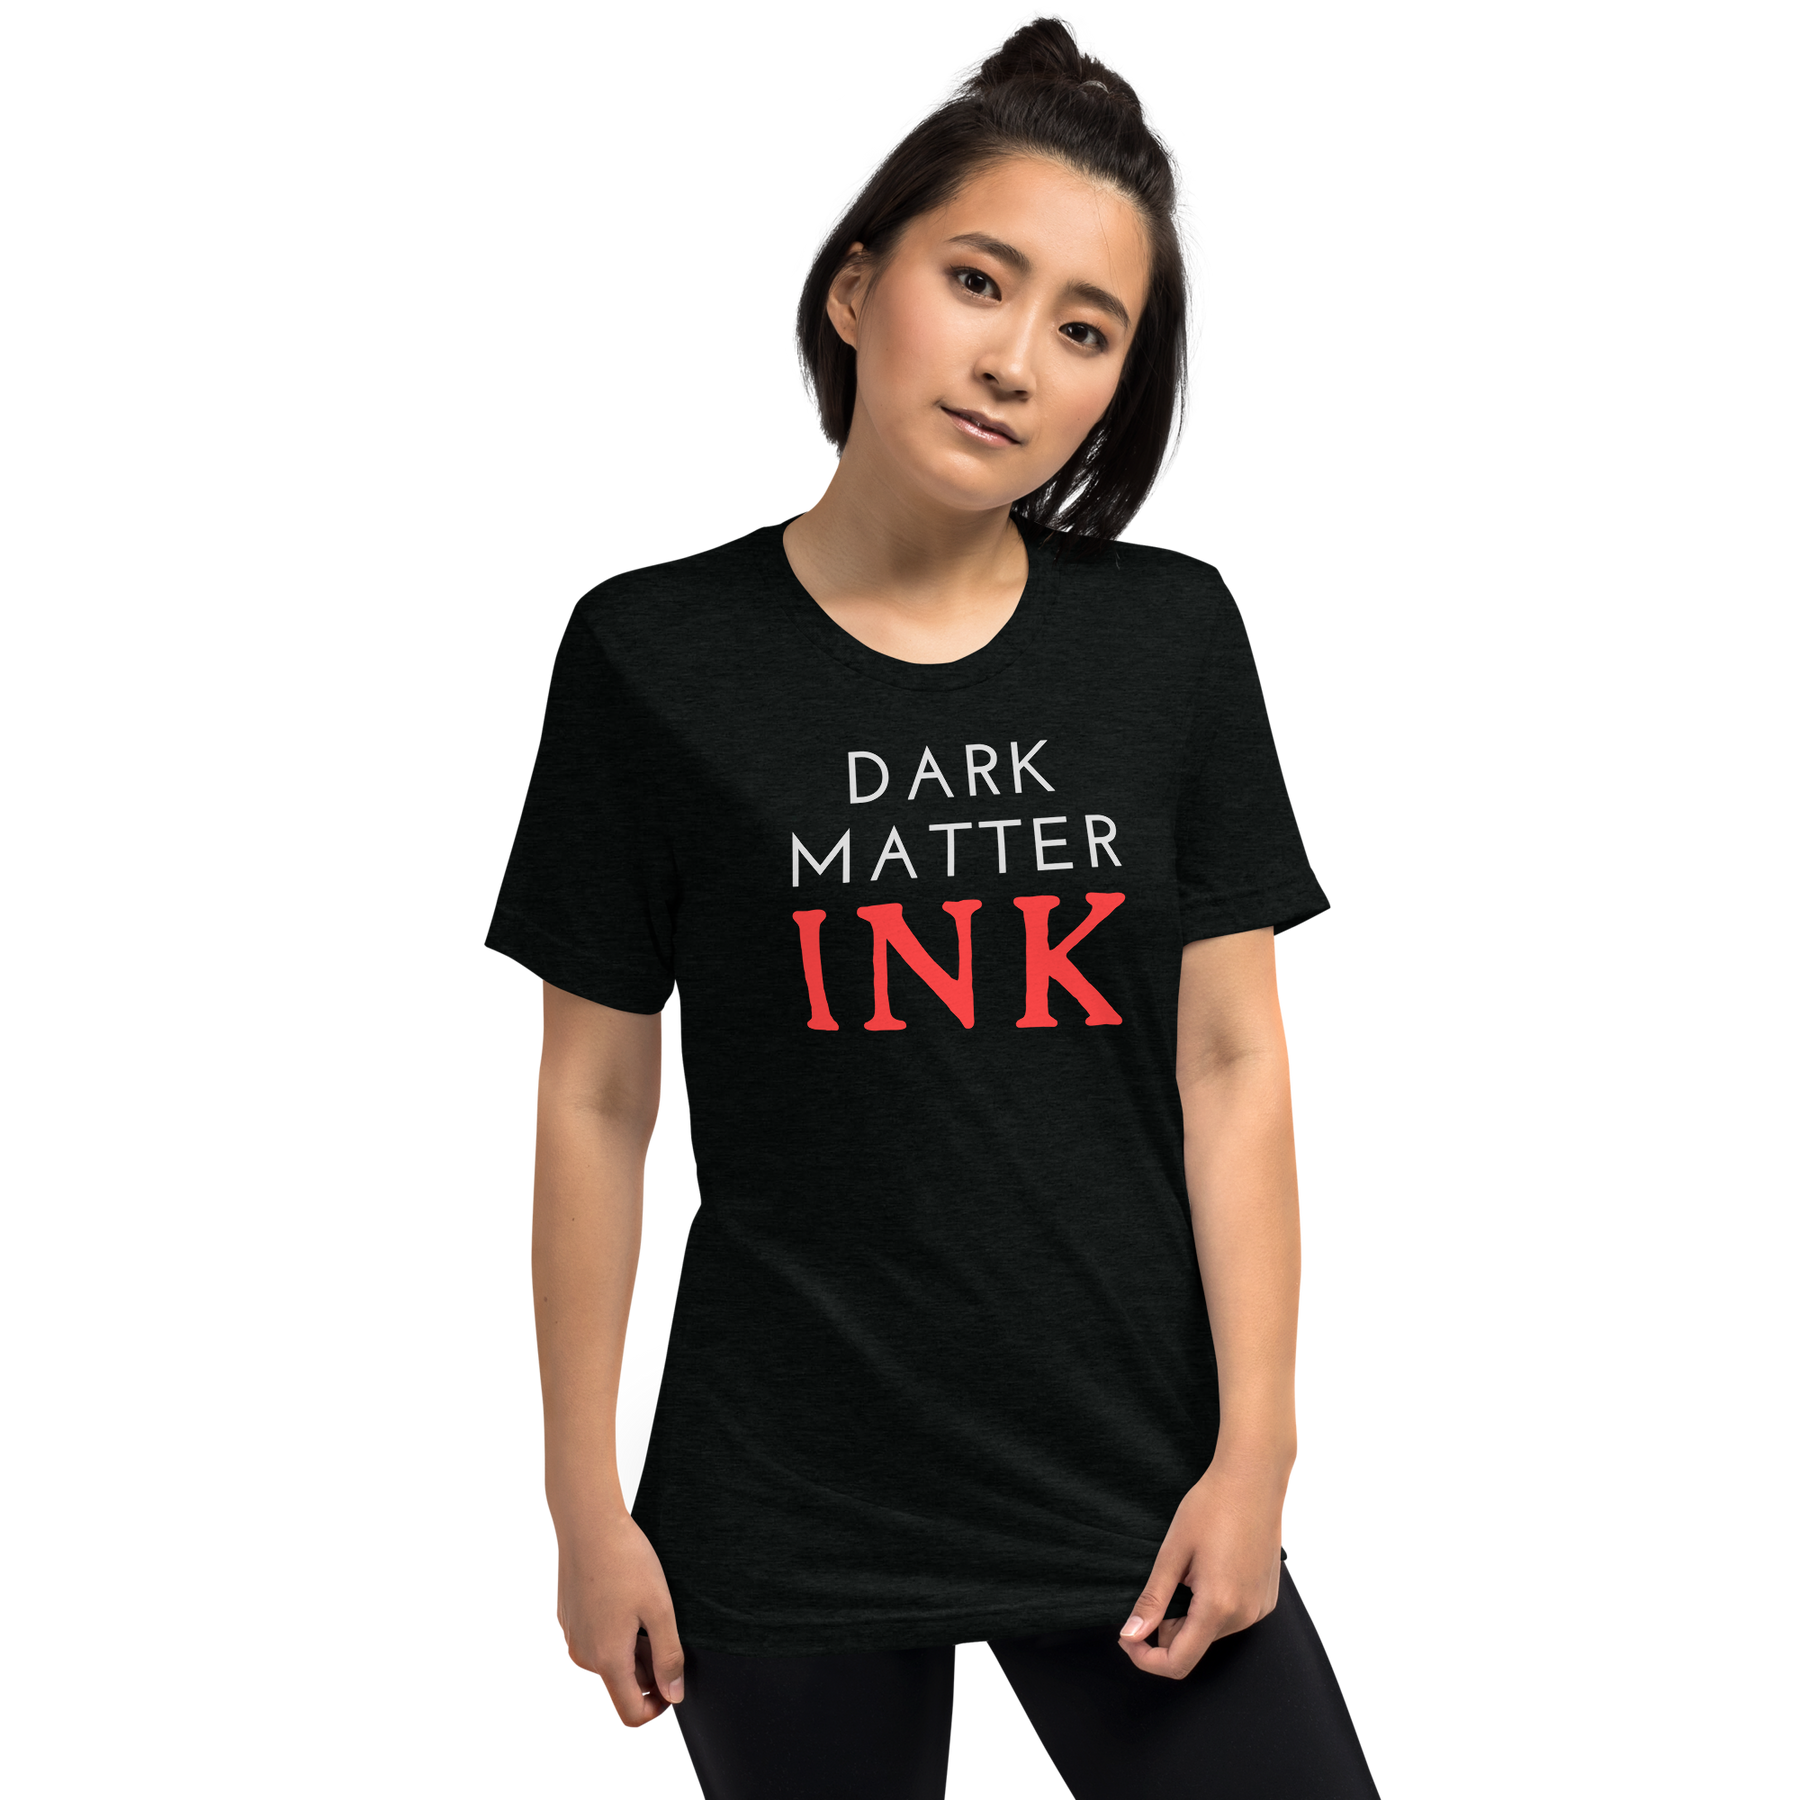 "Dark Matter INK" Tri-blend T-shirt